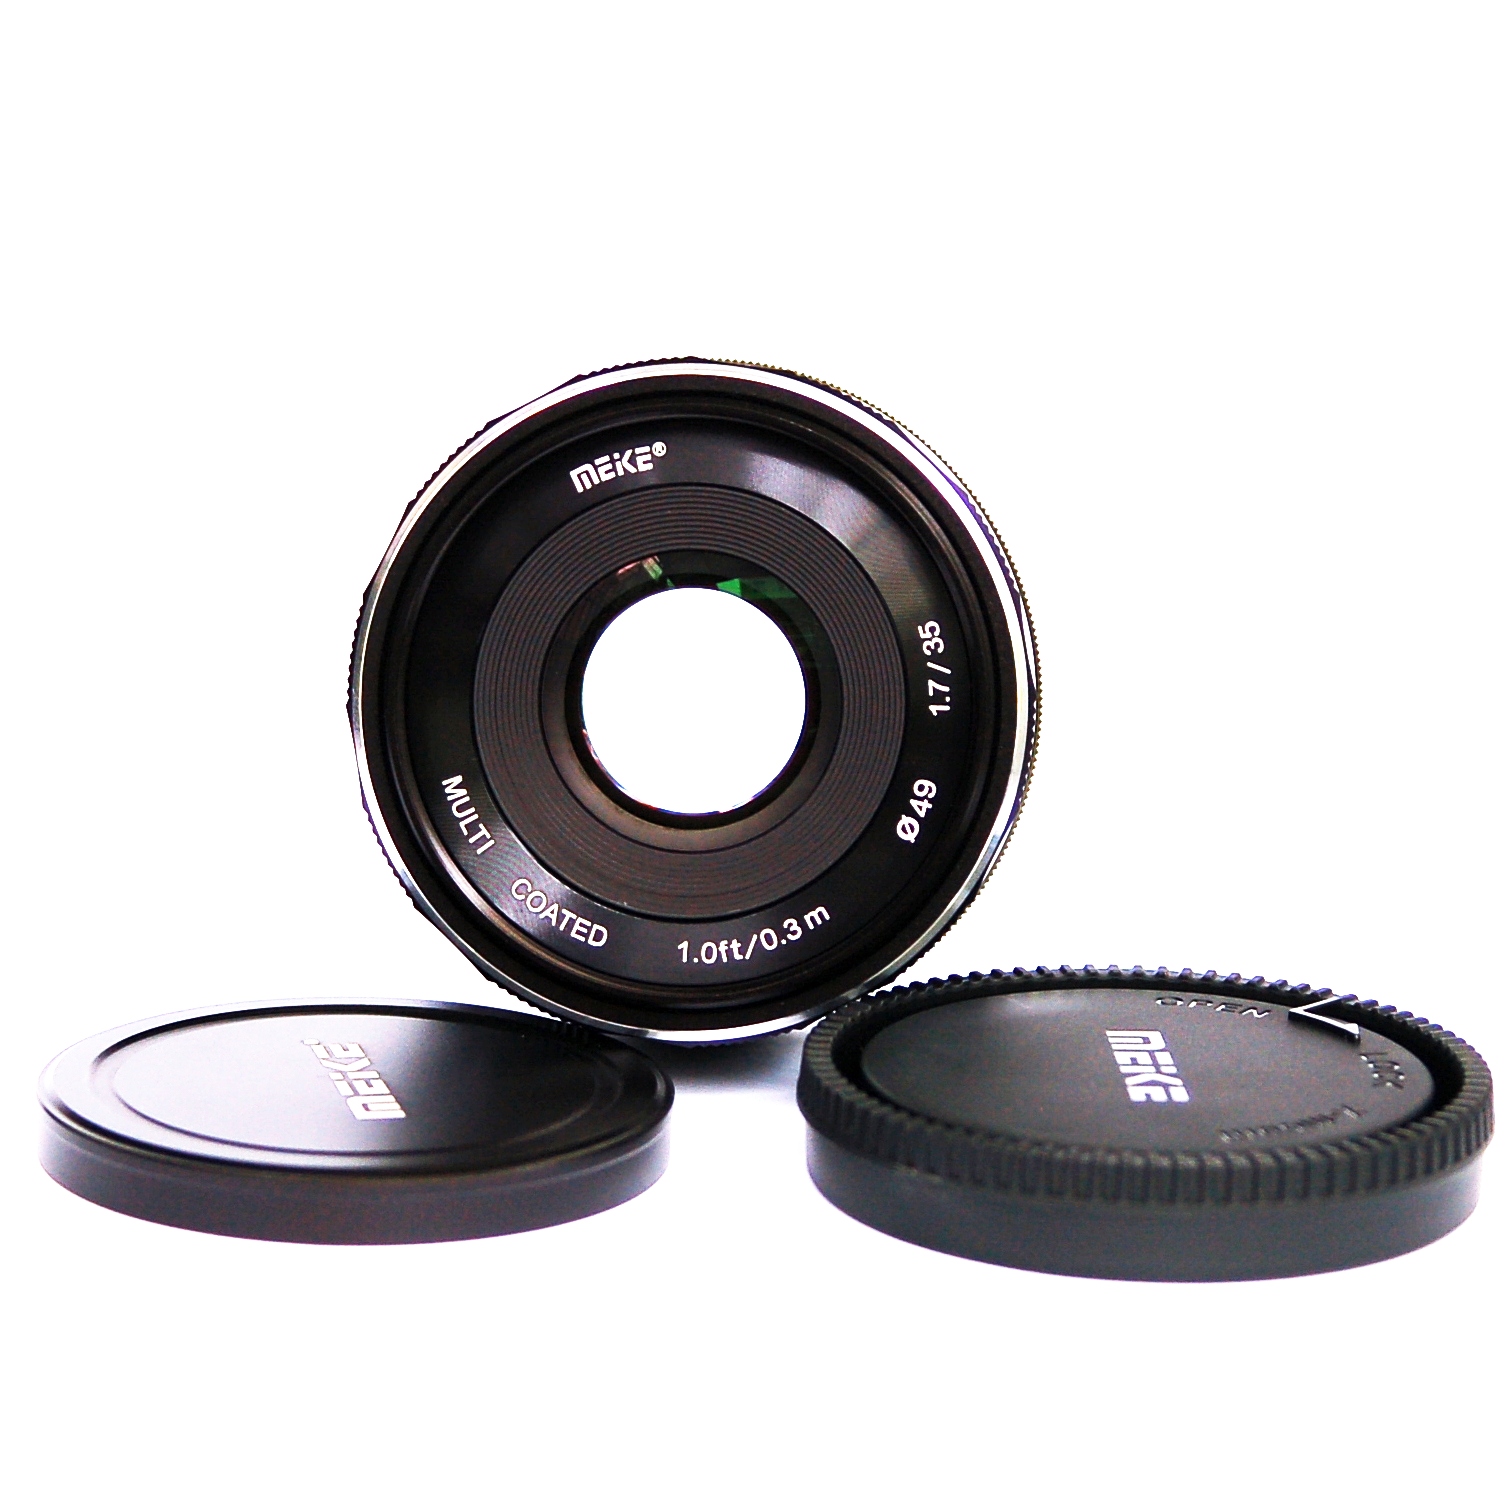 Ống kính Meike 35mm F1.7 cho Canon EOS-M manual focus- Hàng nhập khẩu